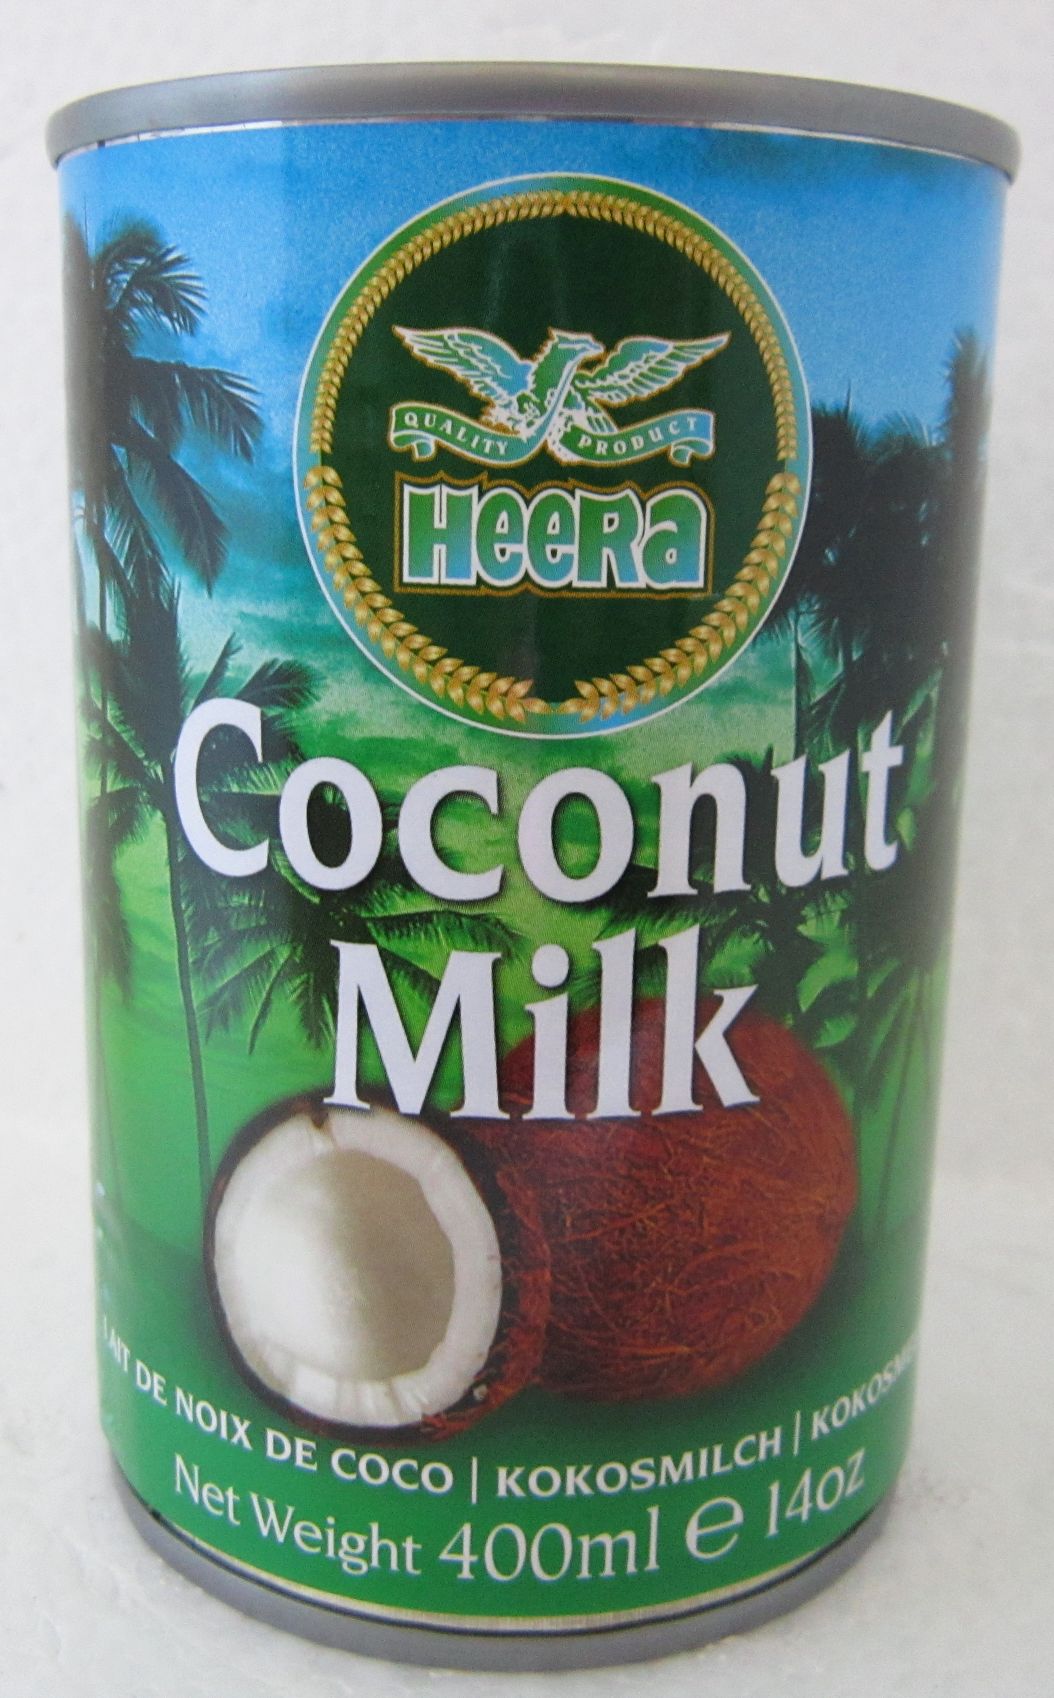 Heera Coconut Milk Image